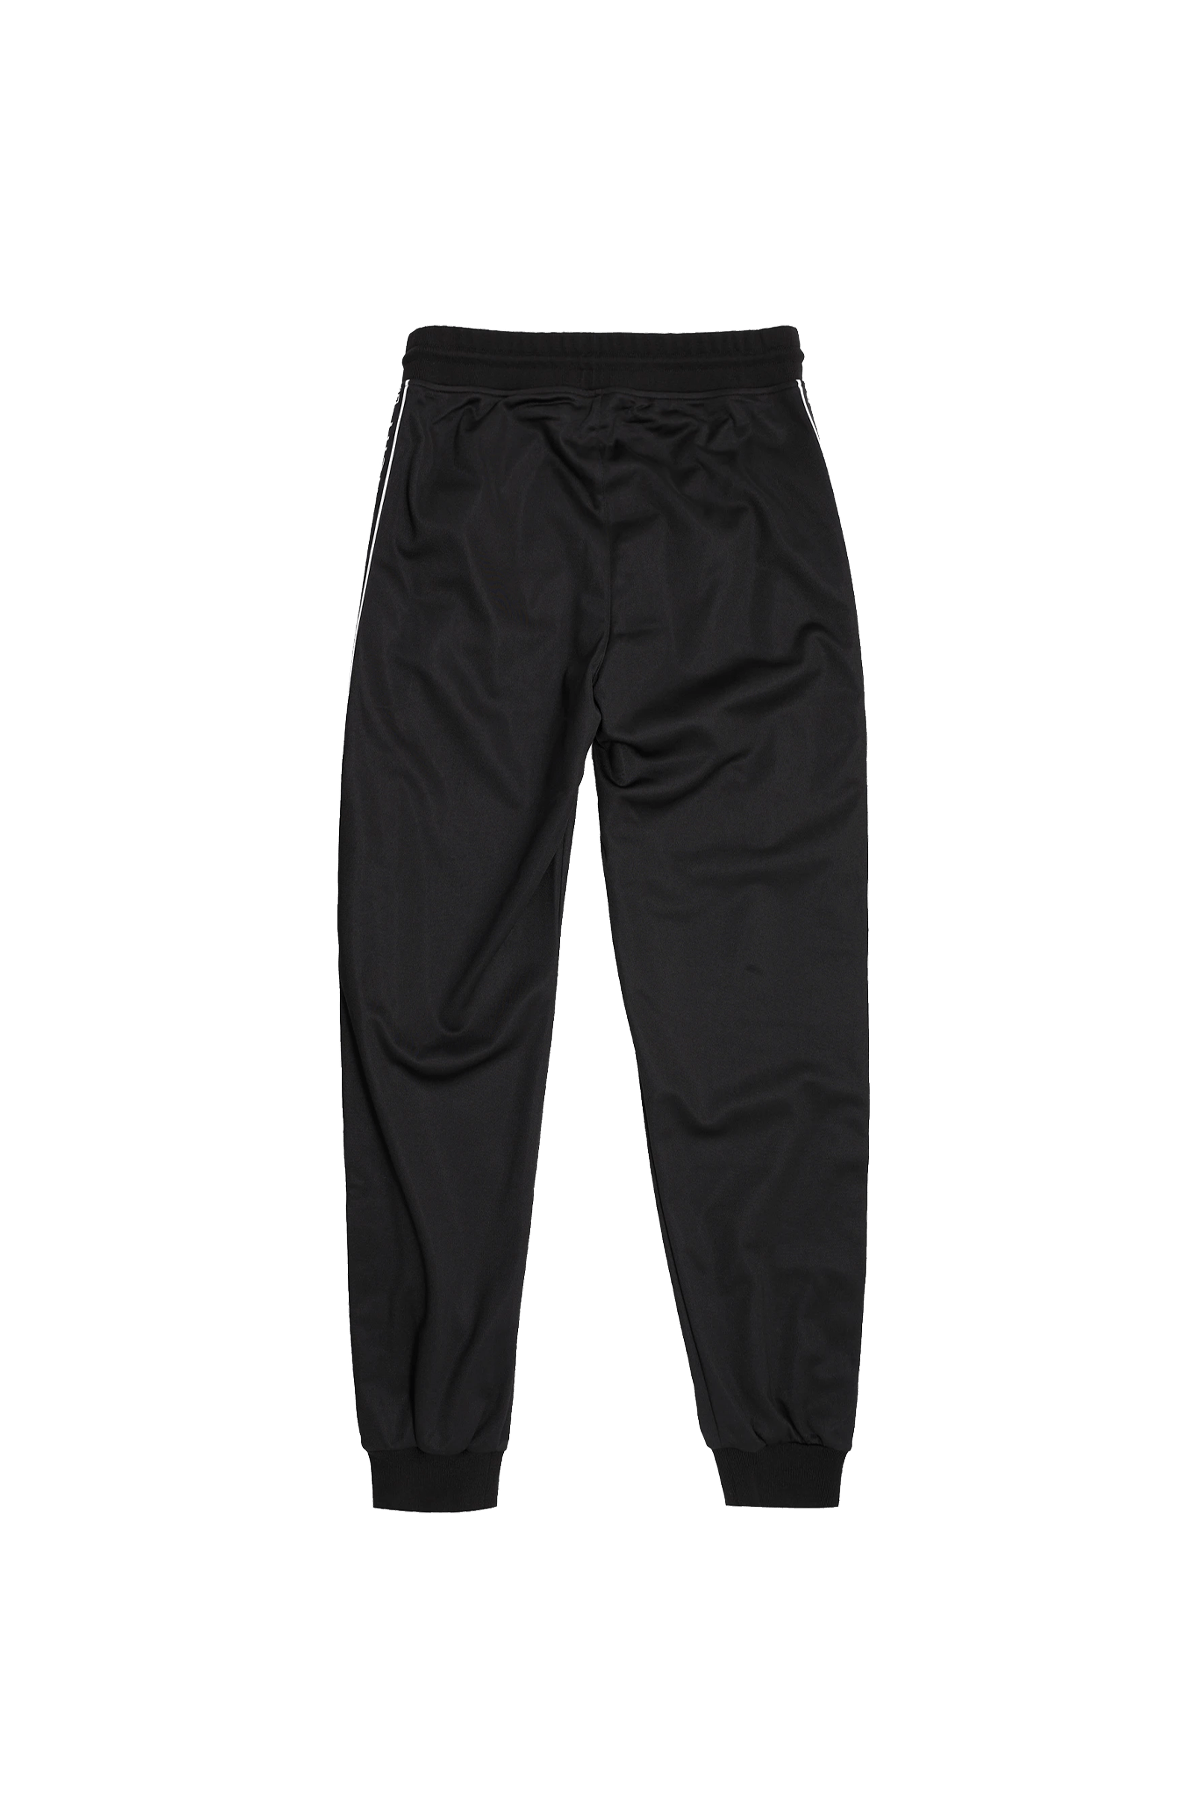 מכנס טרנינג שחור עם פס לוגו ברגליים מכנסיים Givenchy 